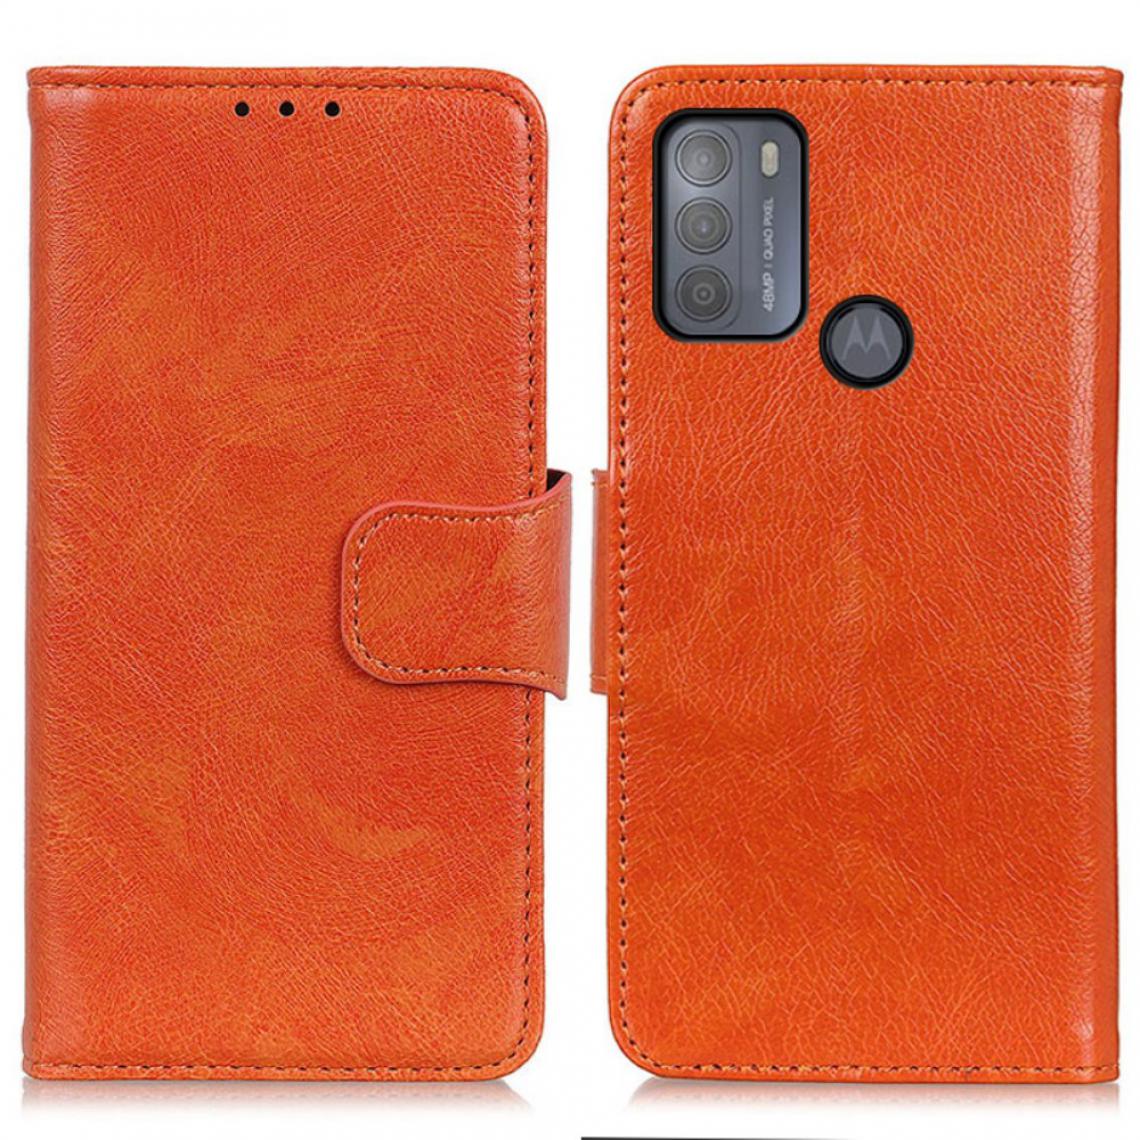 Other - Etui en PU Texture nappa fendue orange pour votre Motorola Moto G50 - Coque, étui smartphone